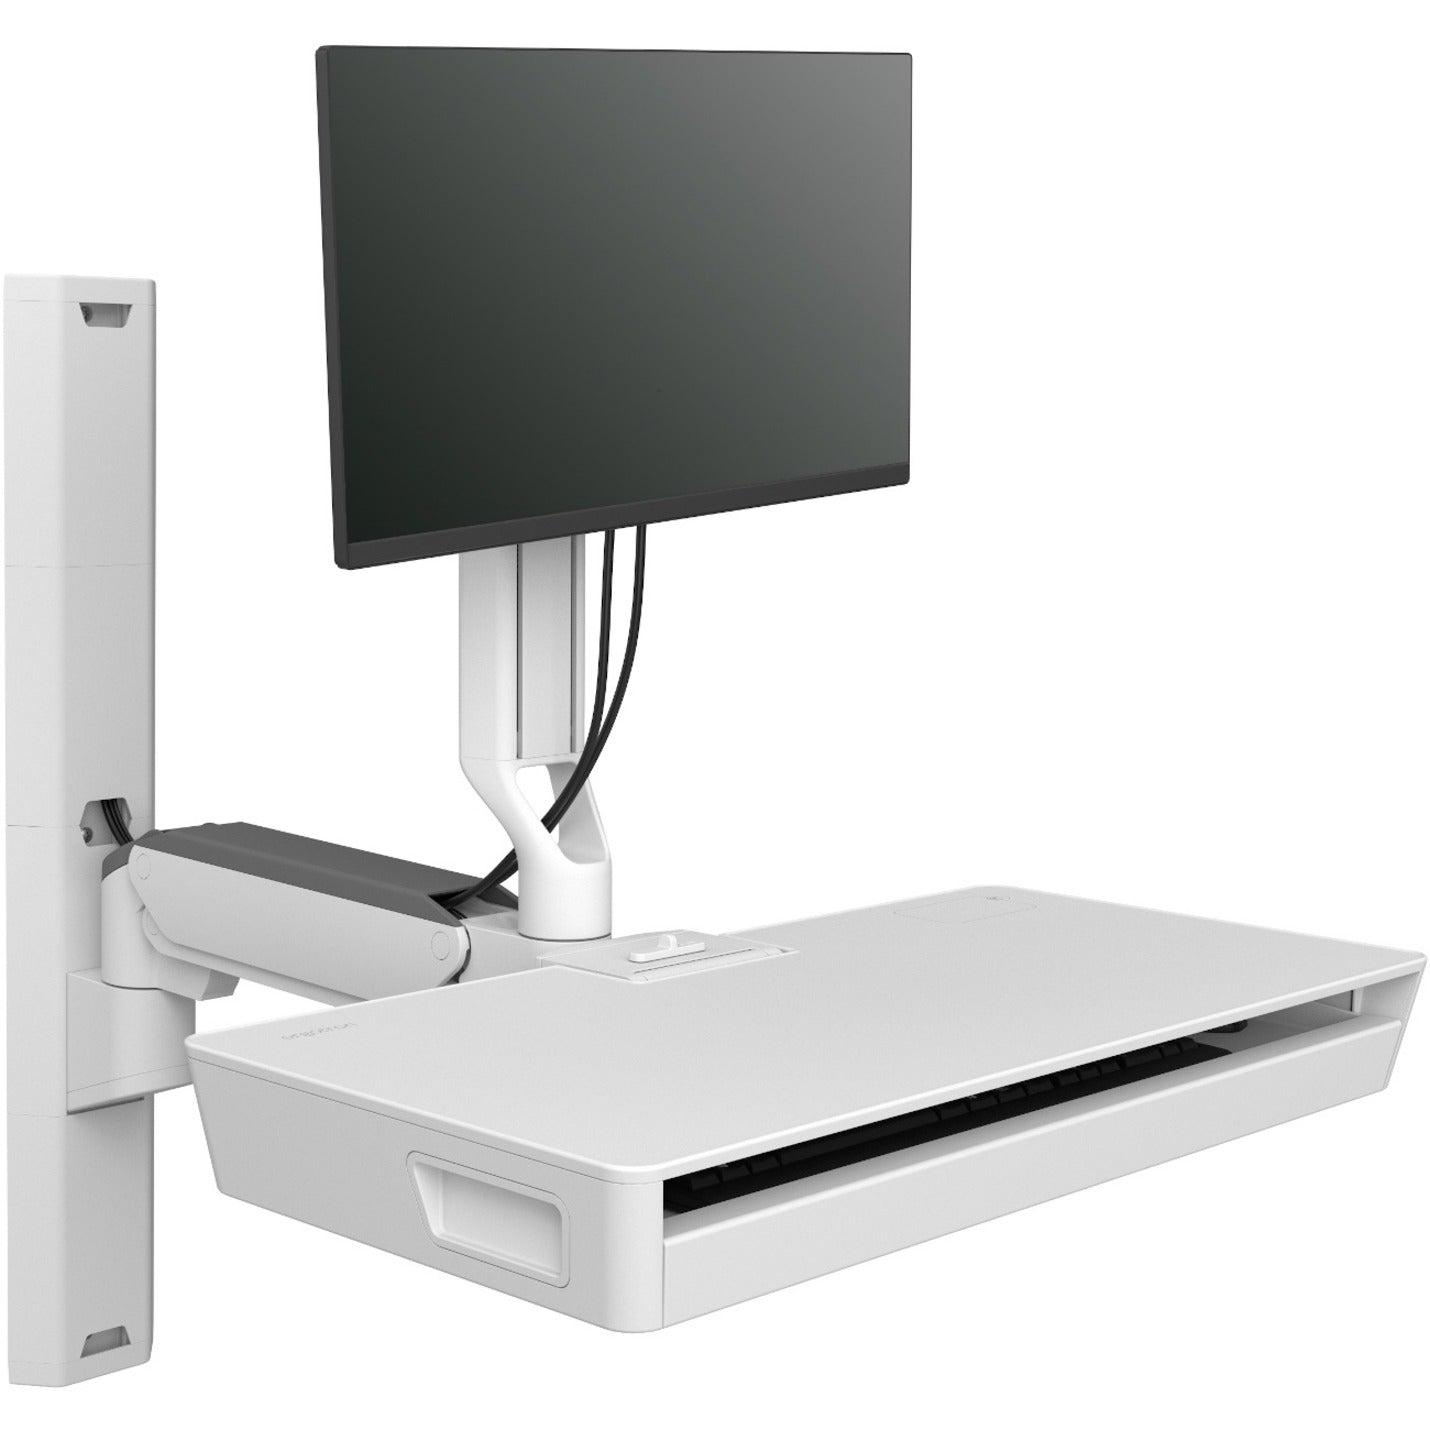 Ergotron 45-619-251 CareFit Halterarm für Monitor Maus Tastatur LCD-Display Montageverlängerung - Weiß